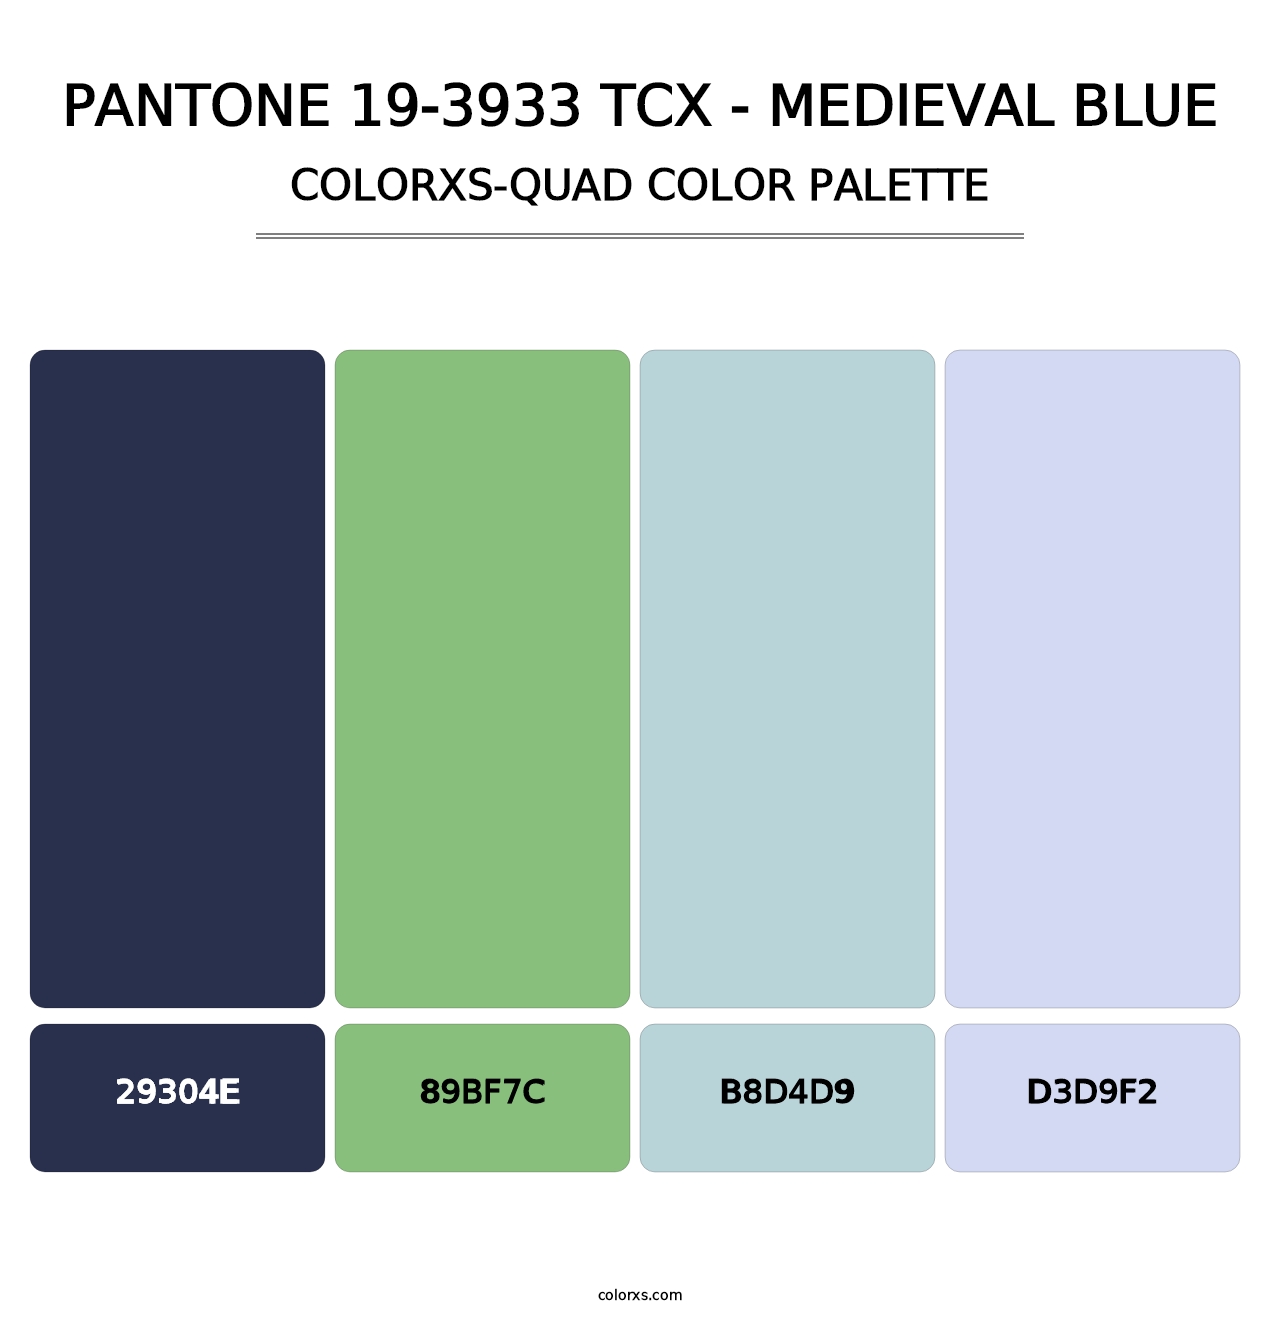 PANTONE 19-3933 TCX - Medieval Blue - Colorxs Quad Palette